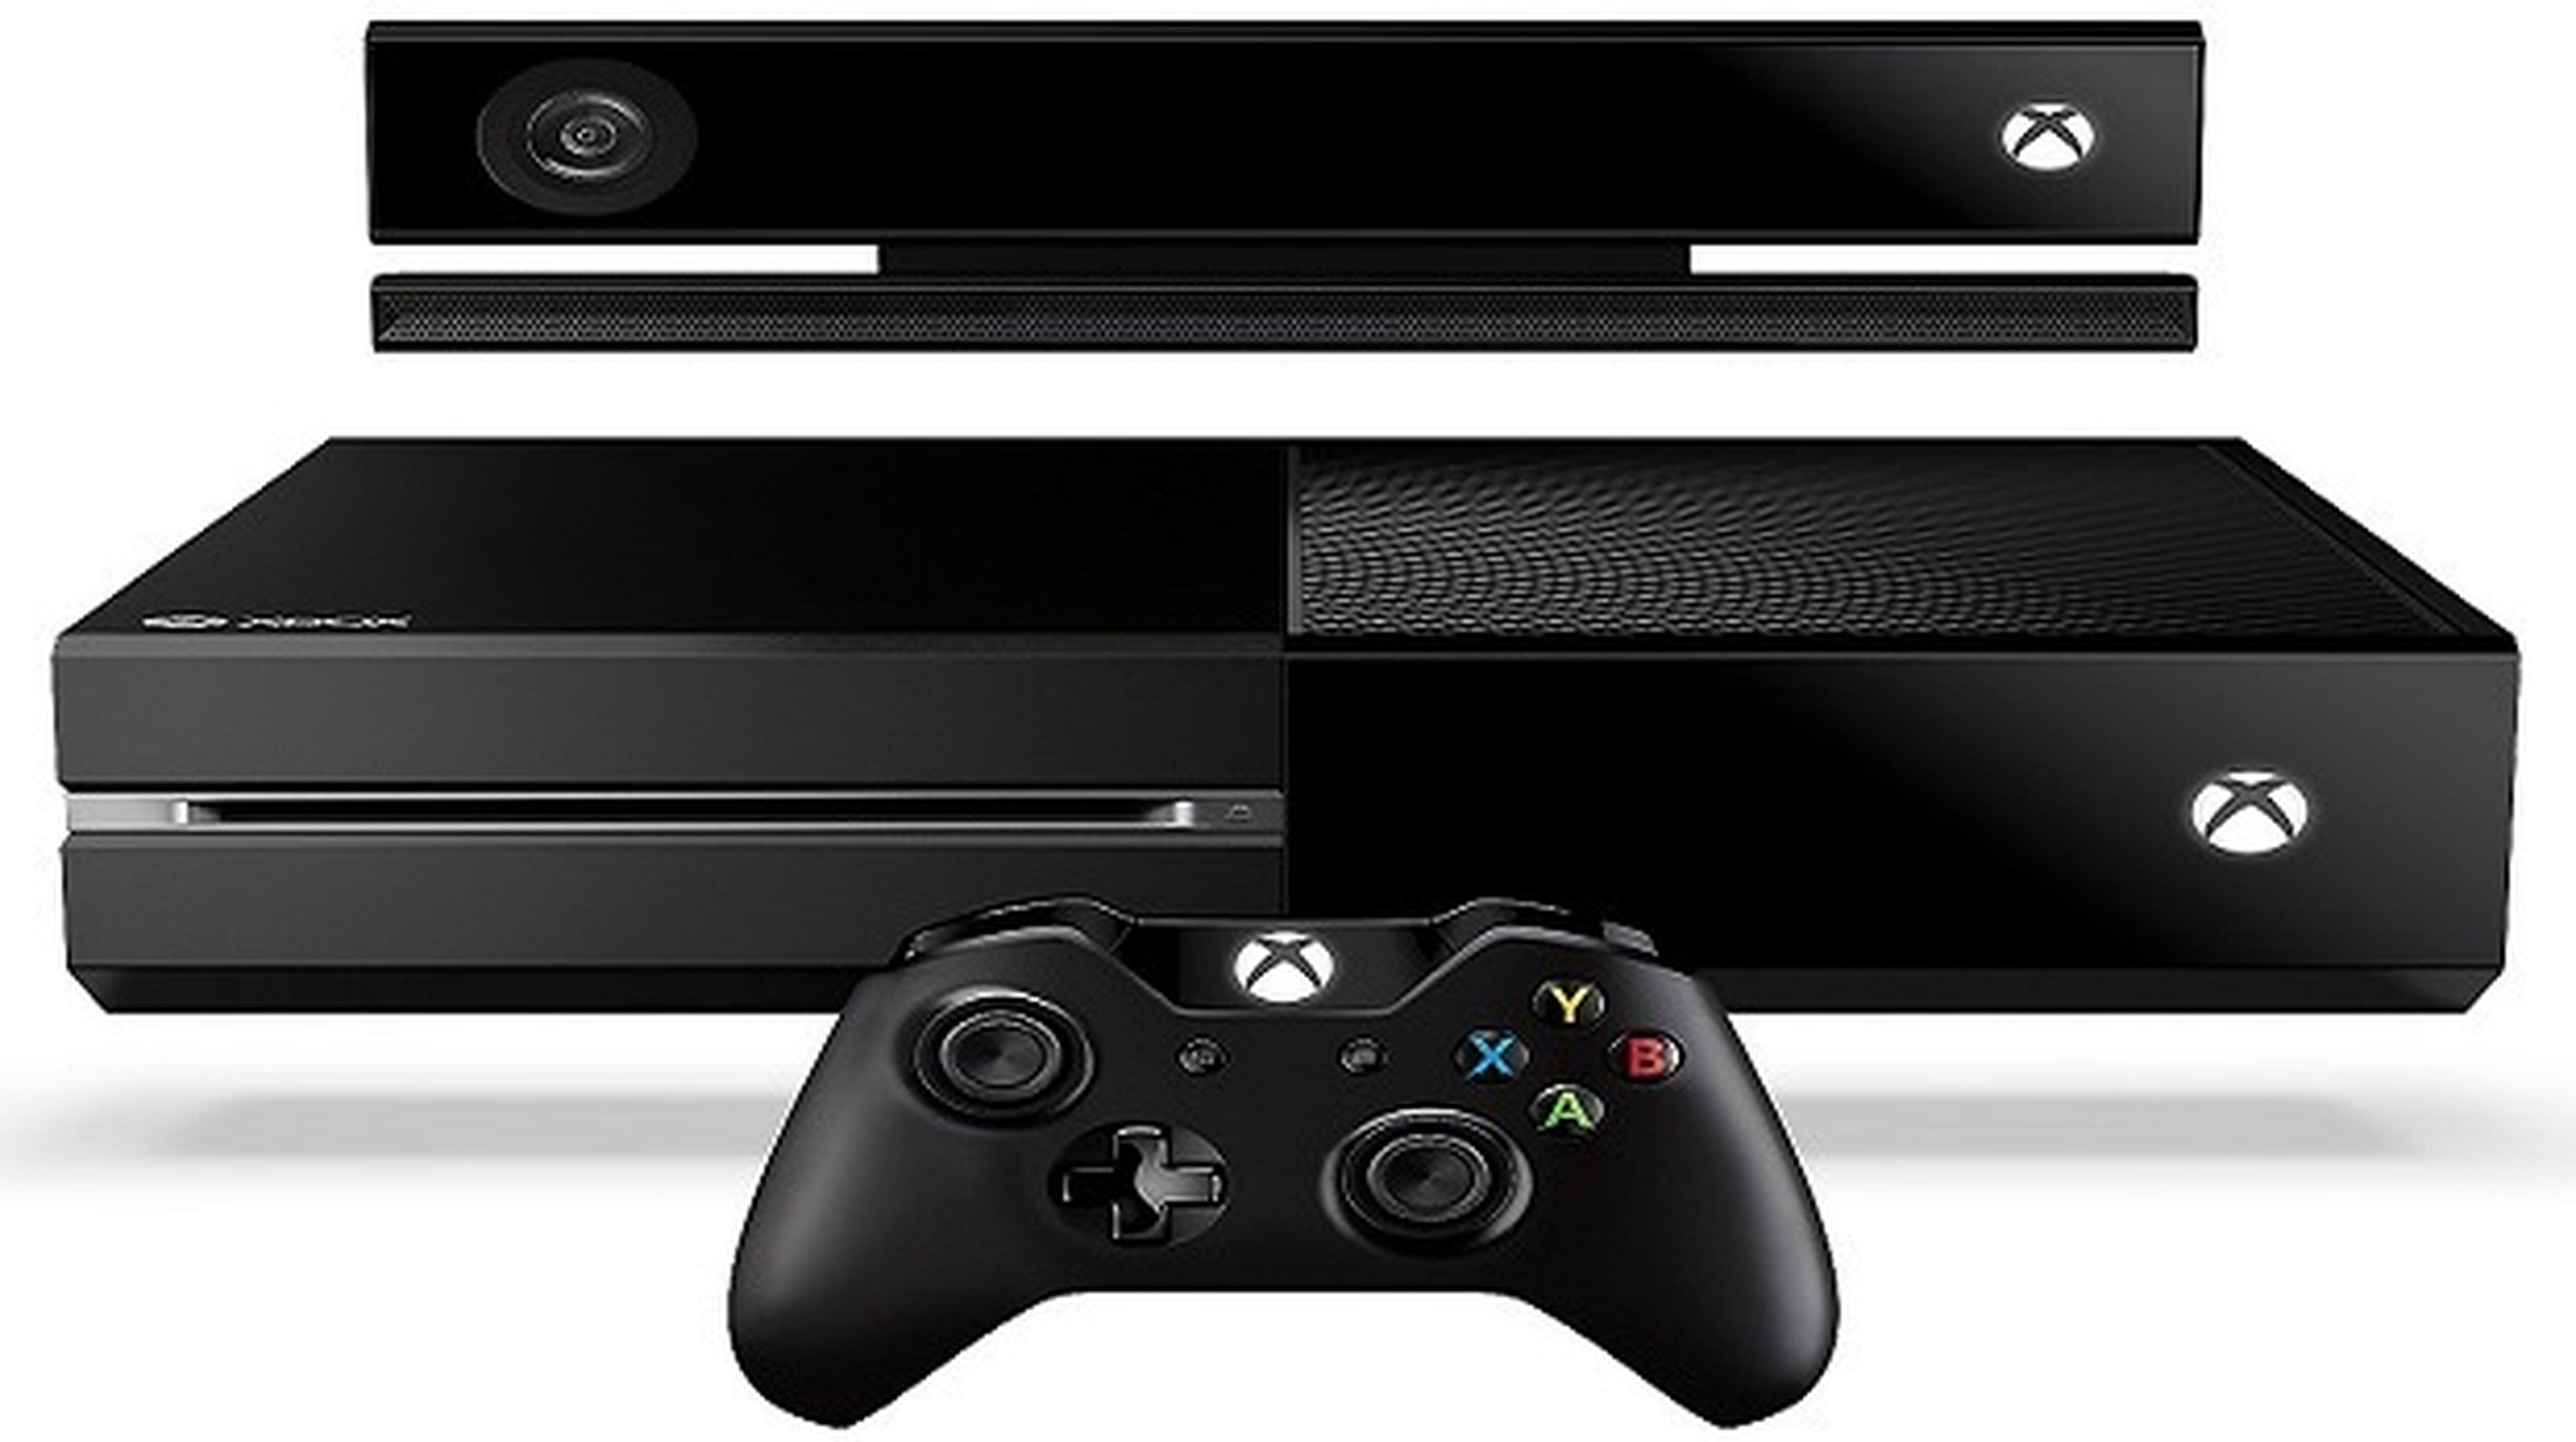 Videojuegos de Xbox One ocuparán más espacio del esperado